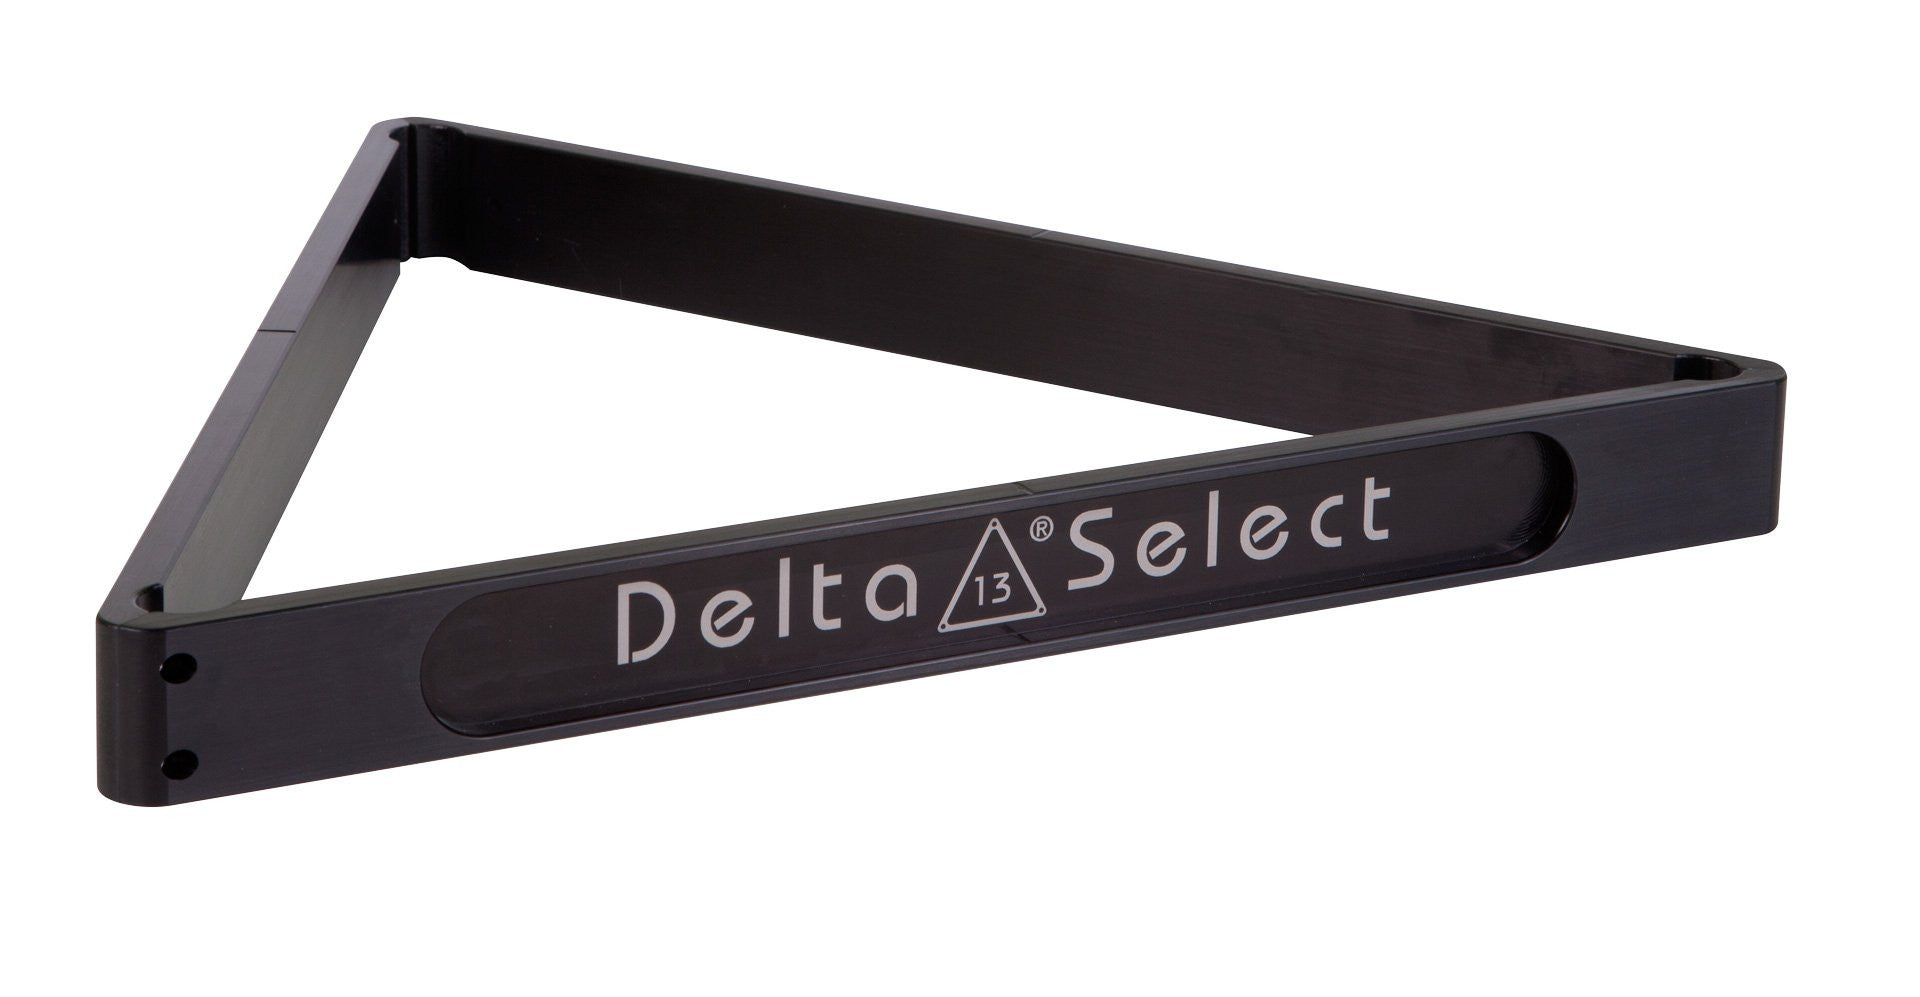 Delta-13 Select - Delta-13 - 2